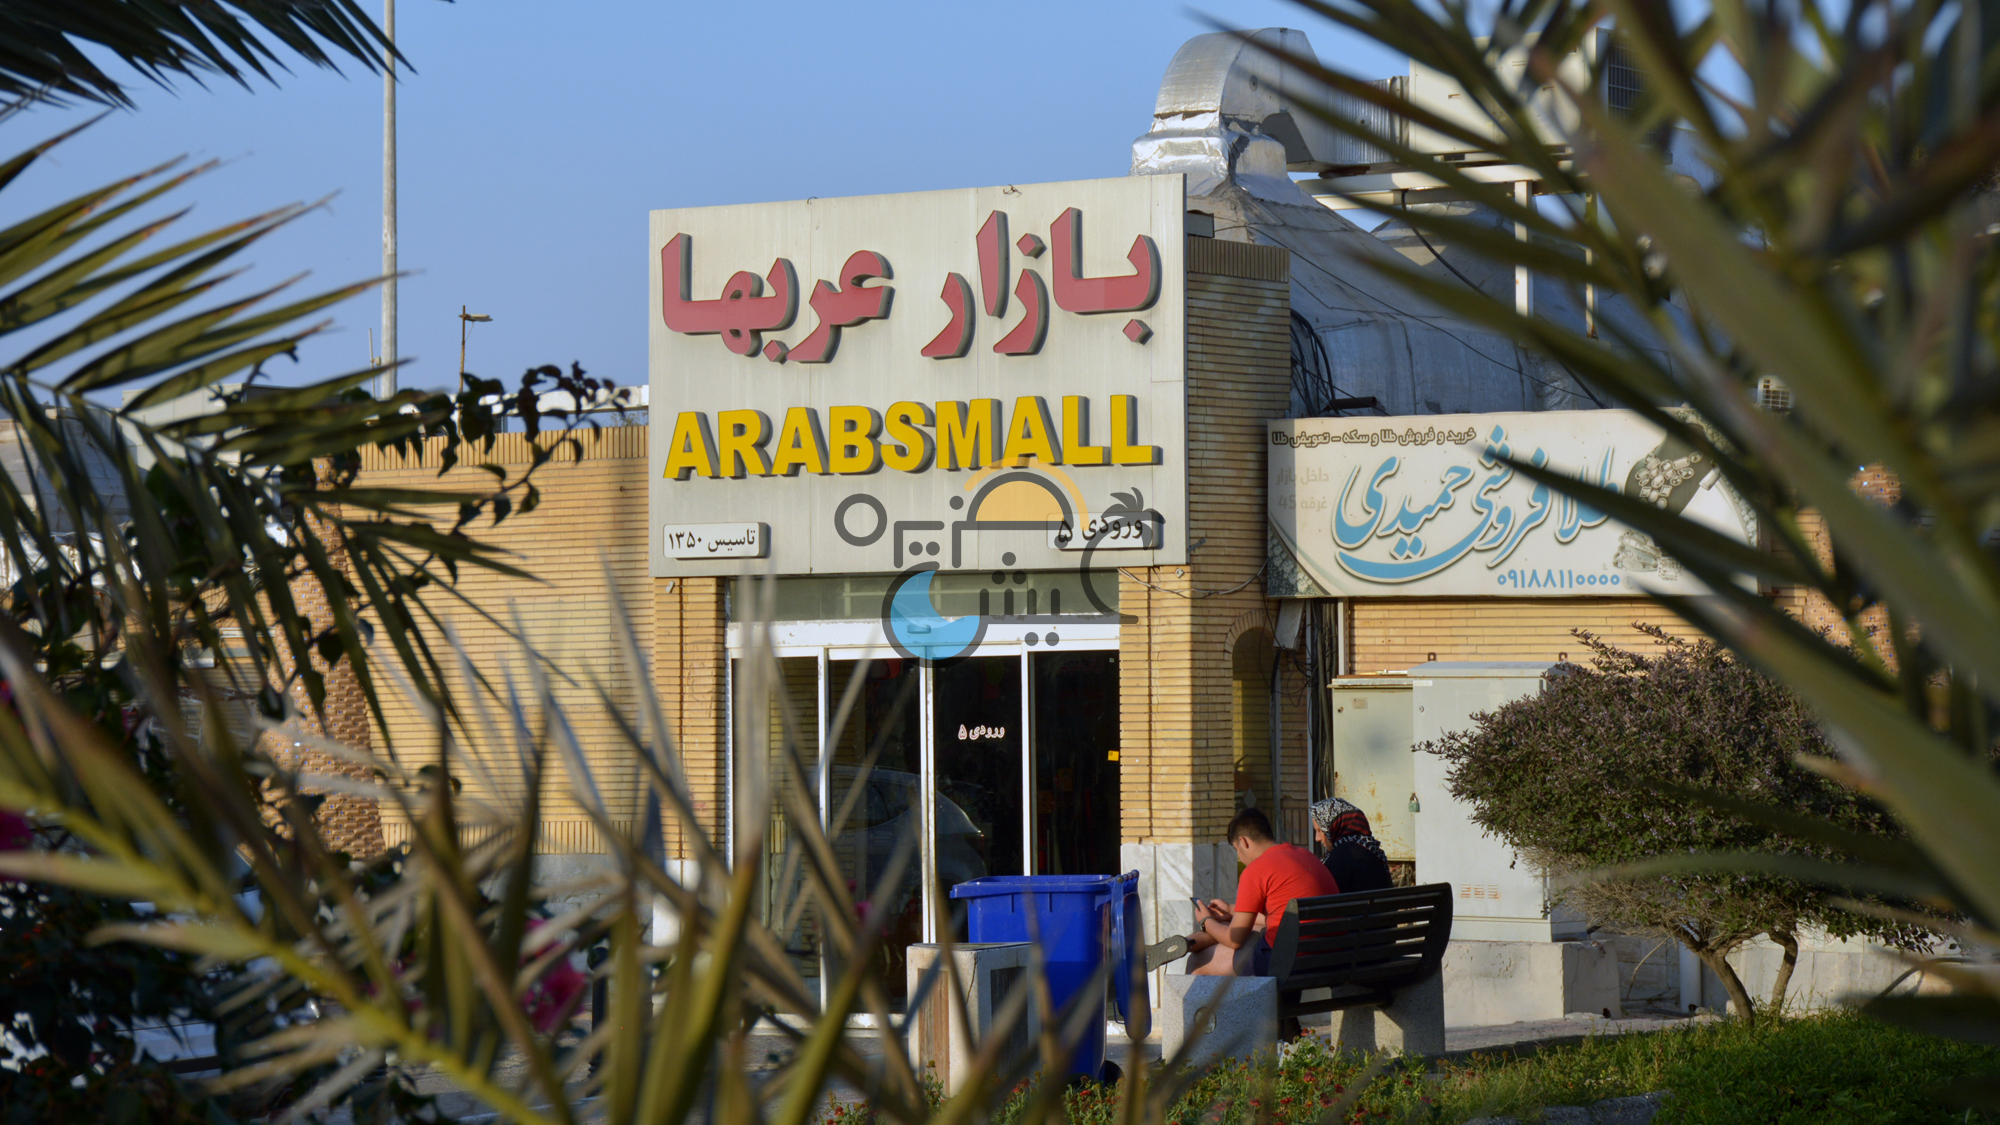 بازار عربها کیش